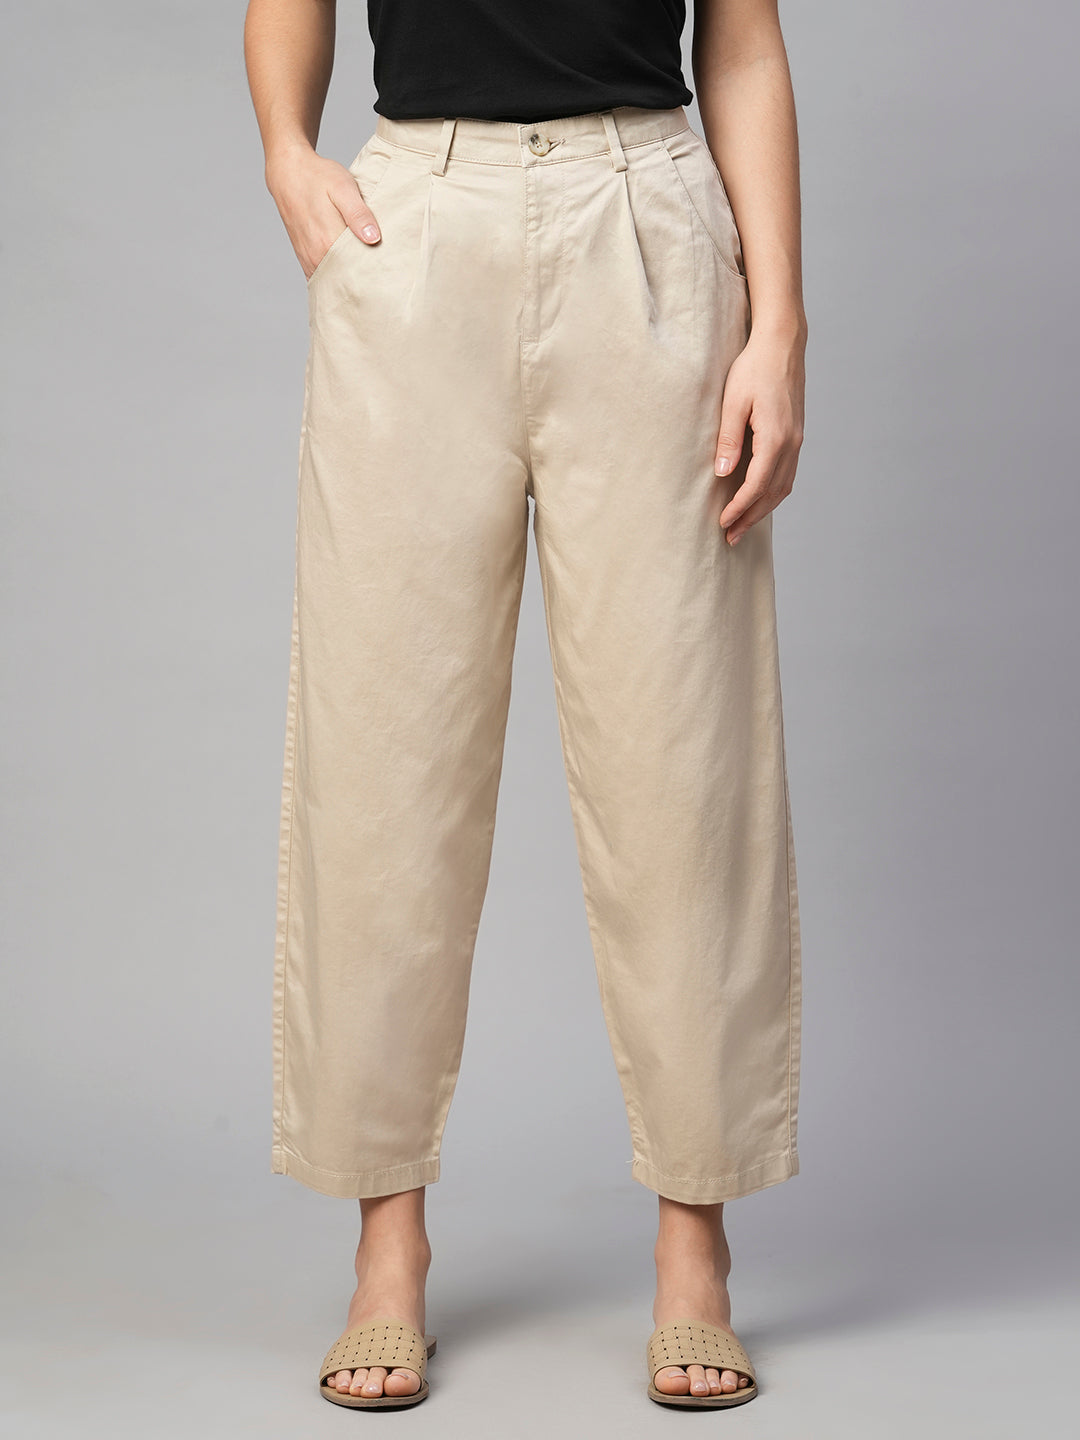 Women's Beige Cotton Elastane Loose Fit Pant